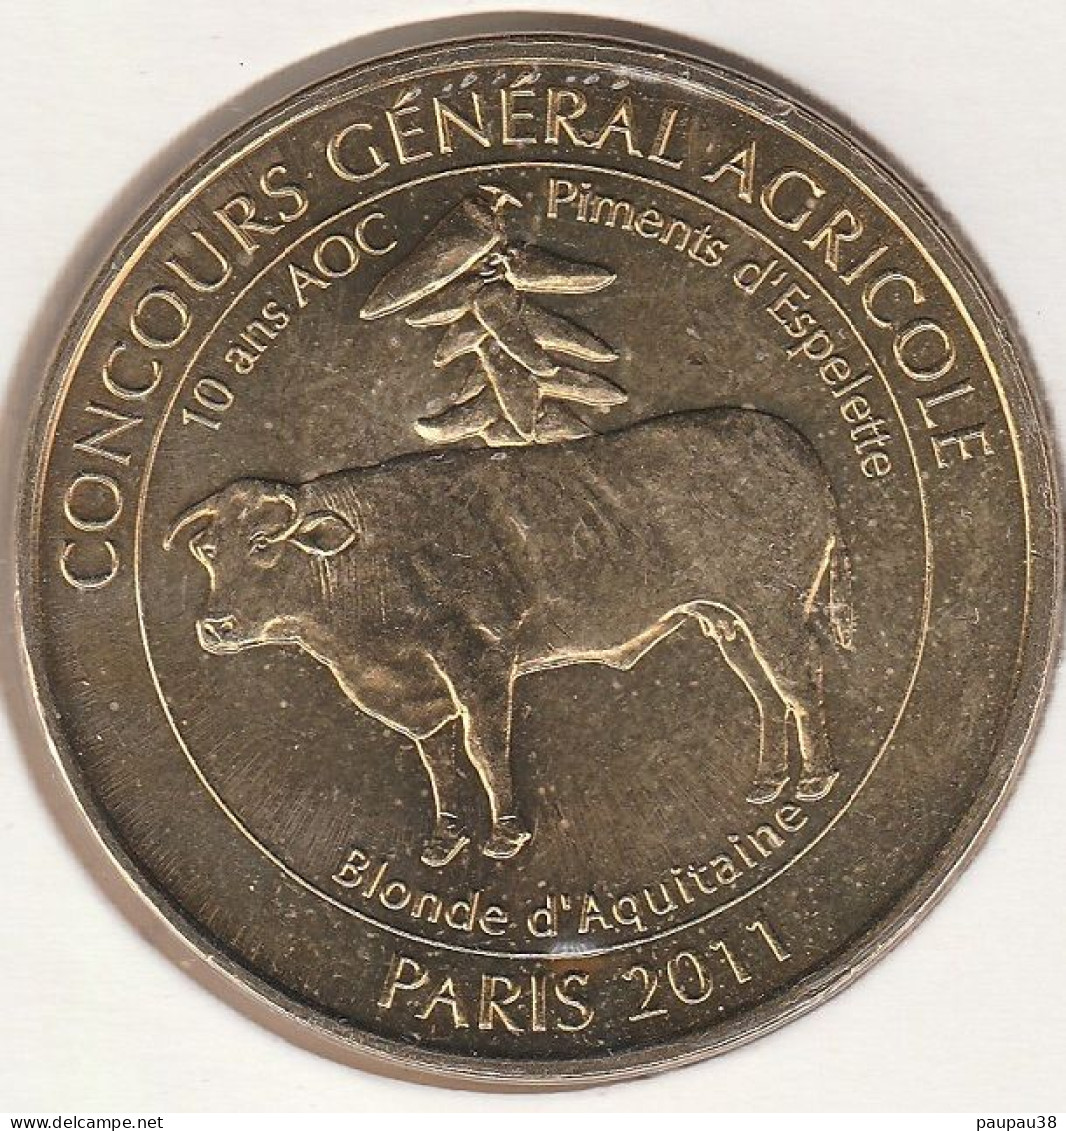 MONNAIE DE PARIS 2011 - 75 PARIS Salon De L'Agriculture - Concours Général Agricole Des Animaux - 2011